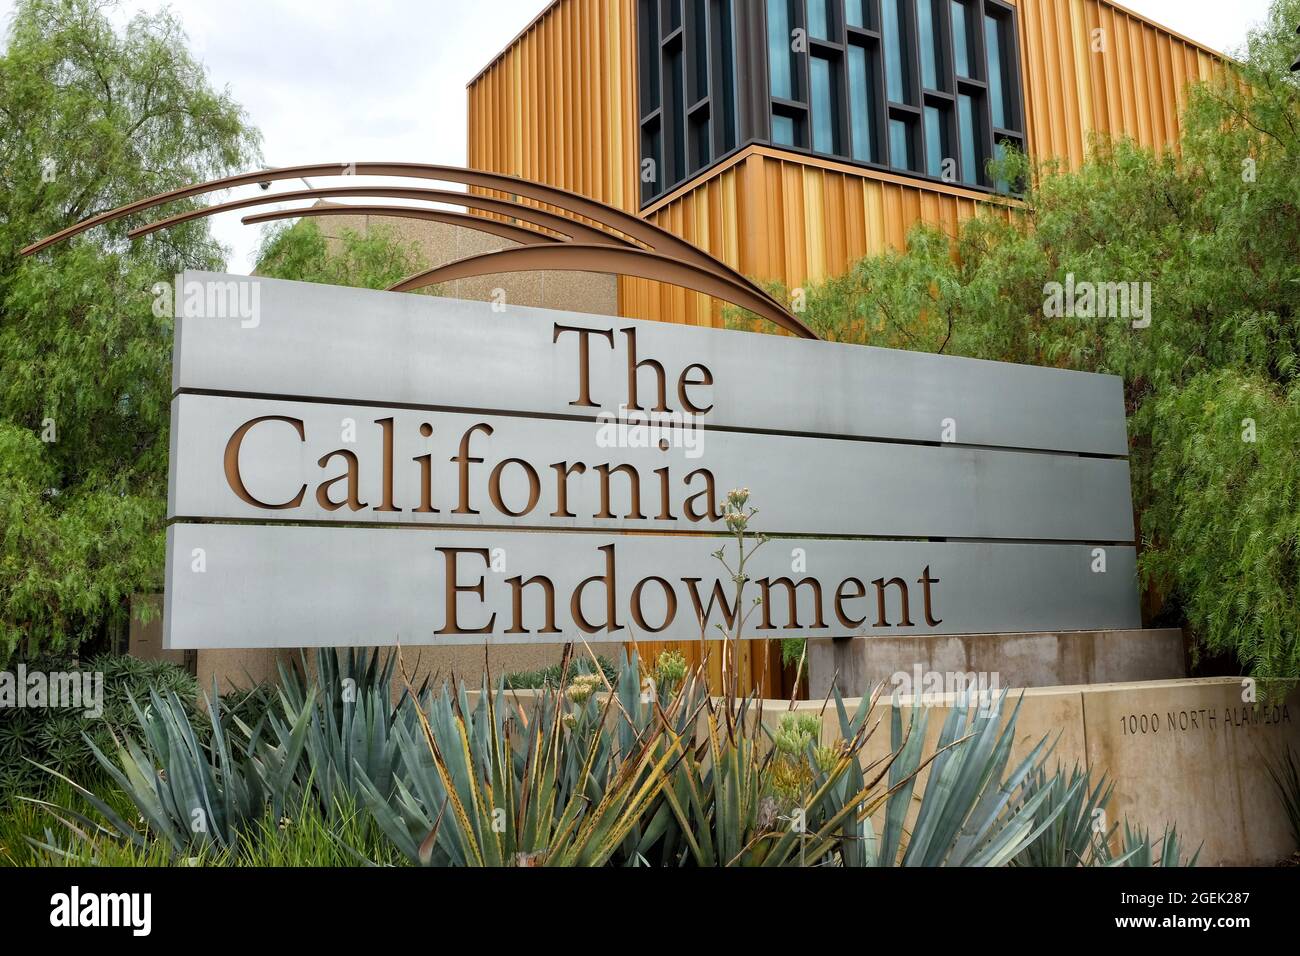 LOS ÁNGELES, CALIFORNIA - 18 DE AGOSTO de 2021: La Fundación de California tiene como objetivo ampliar el acceso a una atención médica asequible y de calidad para las personas subatendidas a. Foto de stock